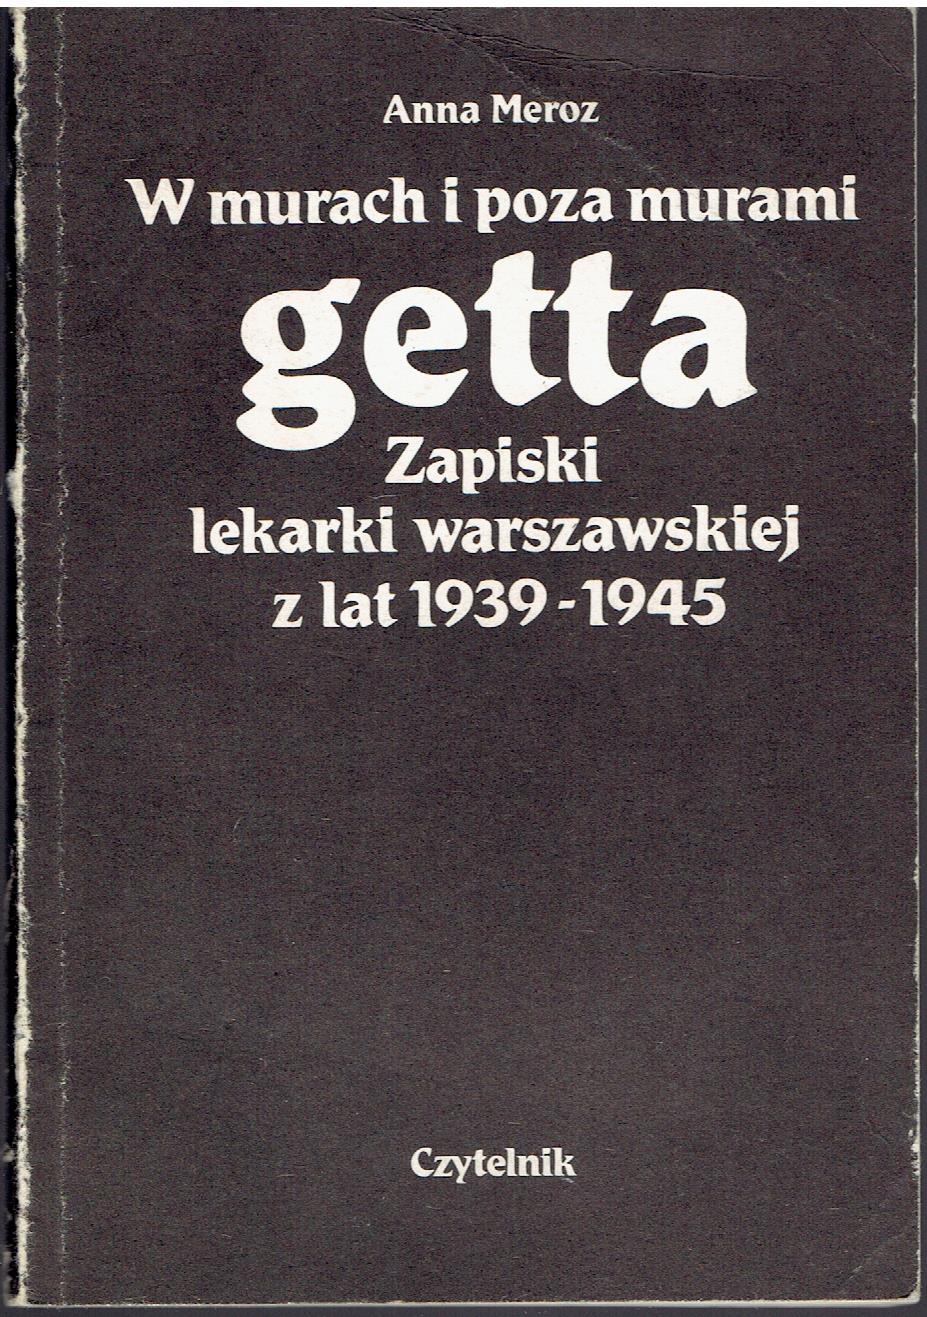  W murach i poza murami getta - Zapiski lekarki warszawskiej z lat 1939-194